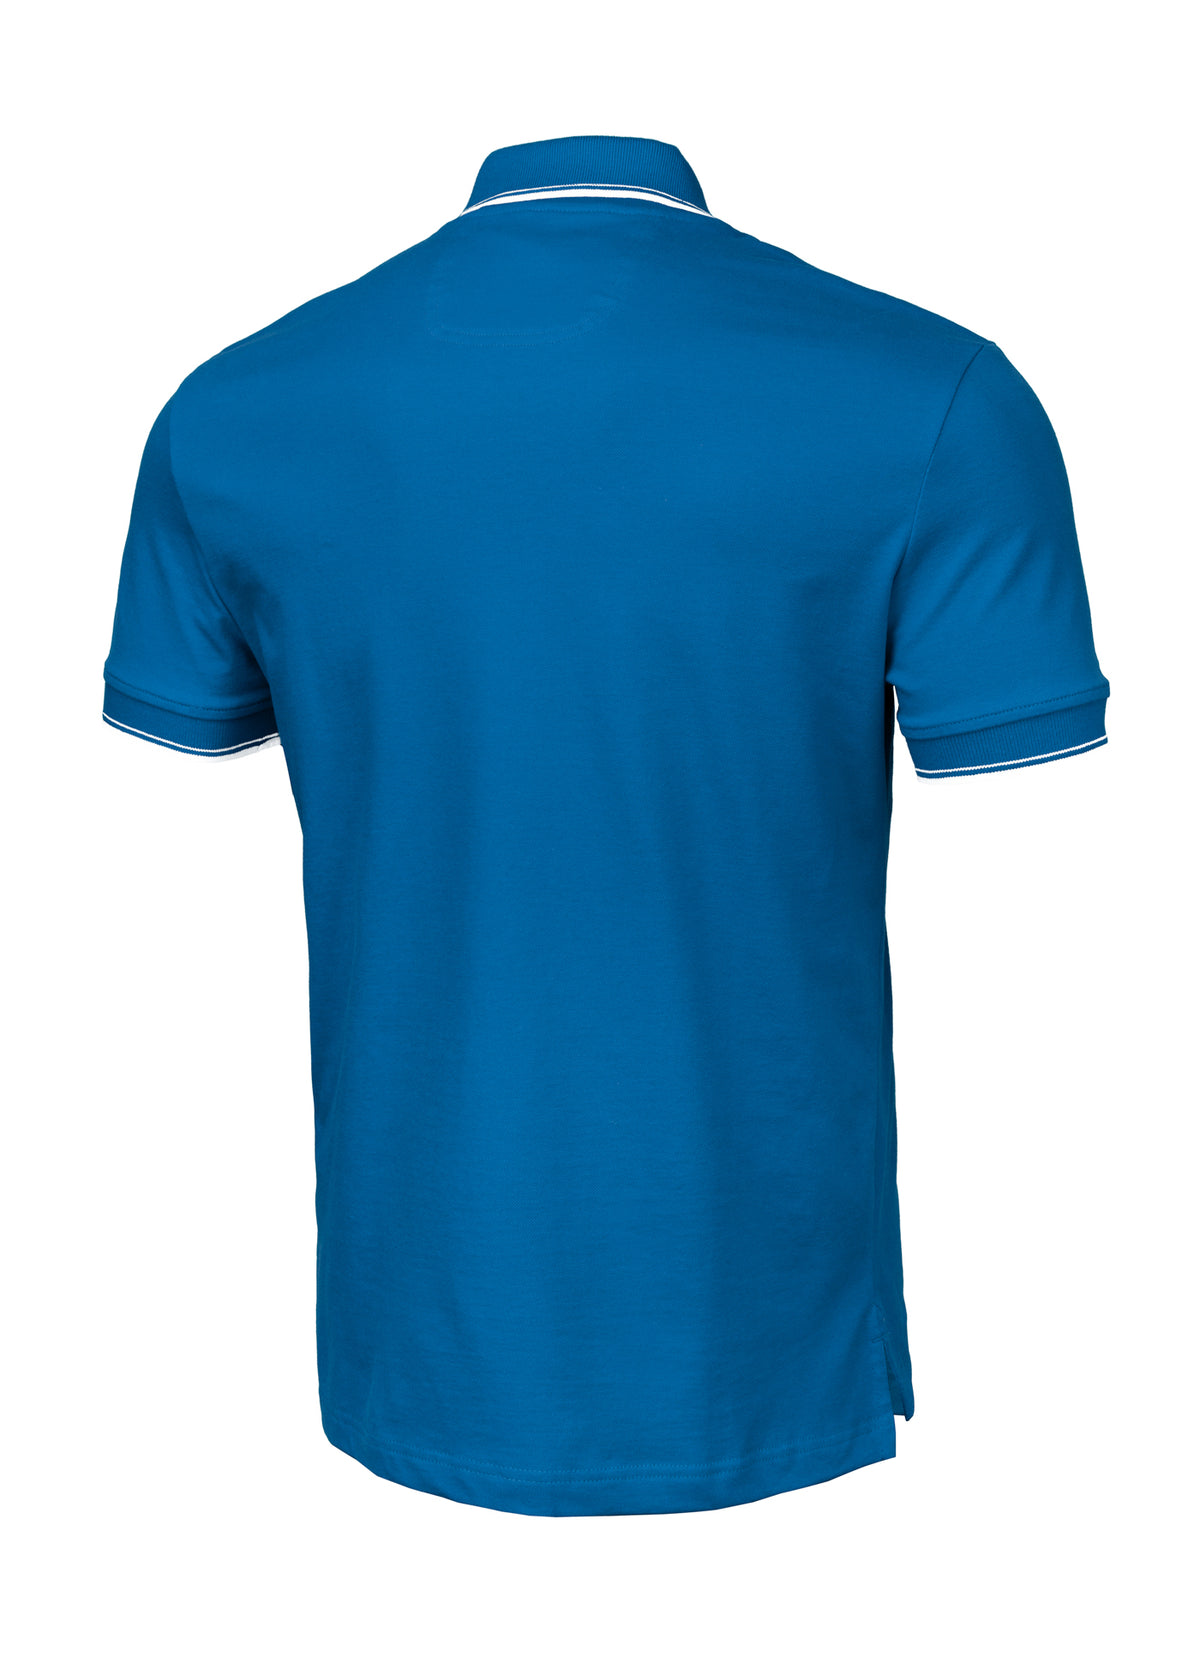 PIQUE STRIPES REGULAR Blue Polo T-shirt